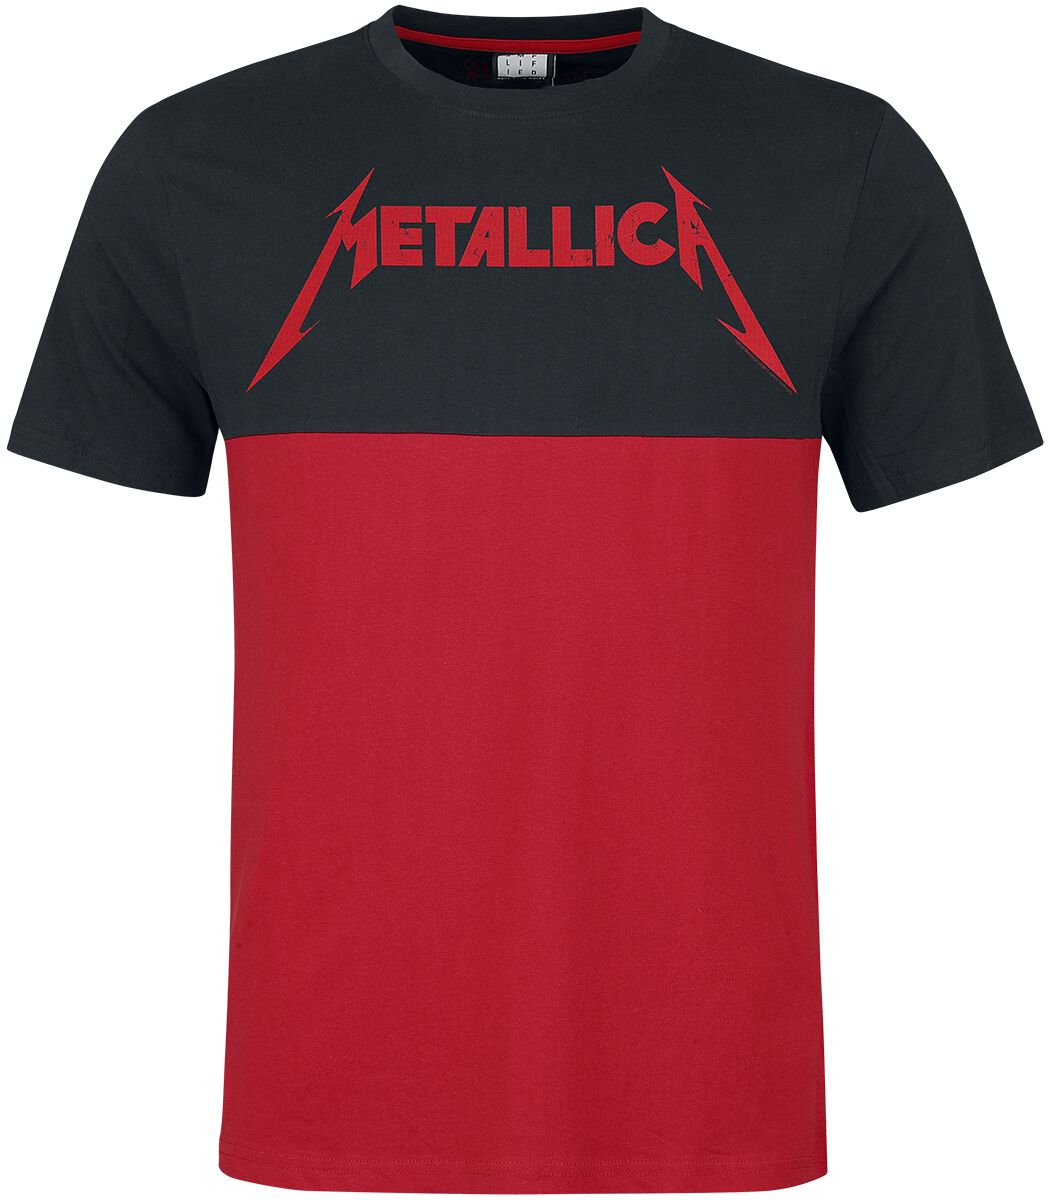 Metallica T-Shirt - Amplified Collection - Kill `Em All - S bis M - für Männer - Größe S - schwarz/rot  - Lizenziertes Merchandise!